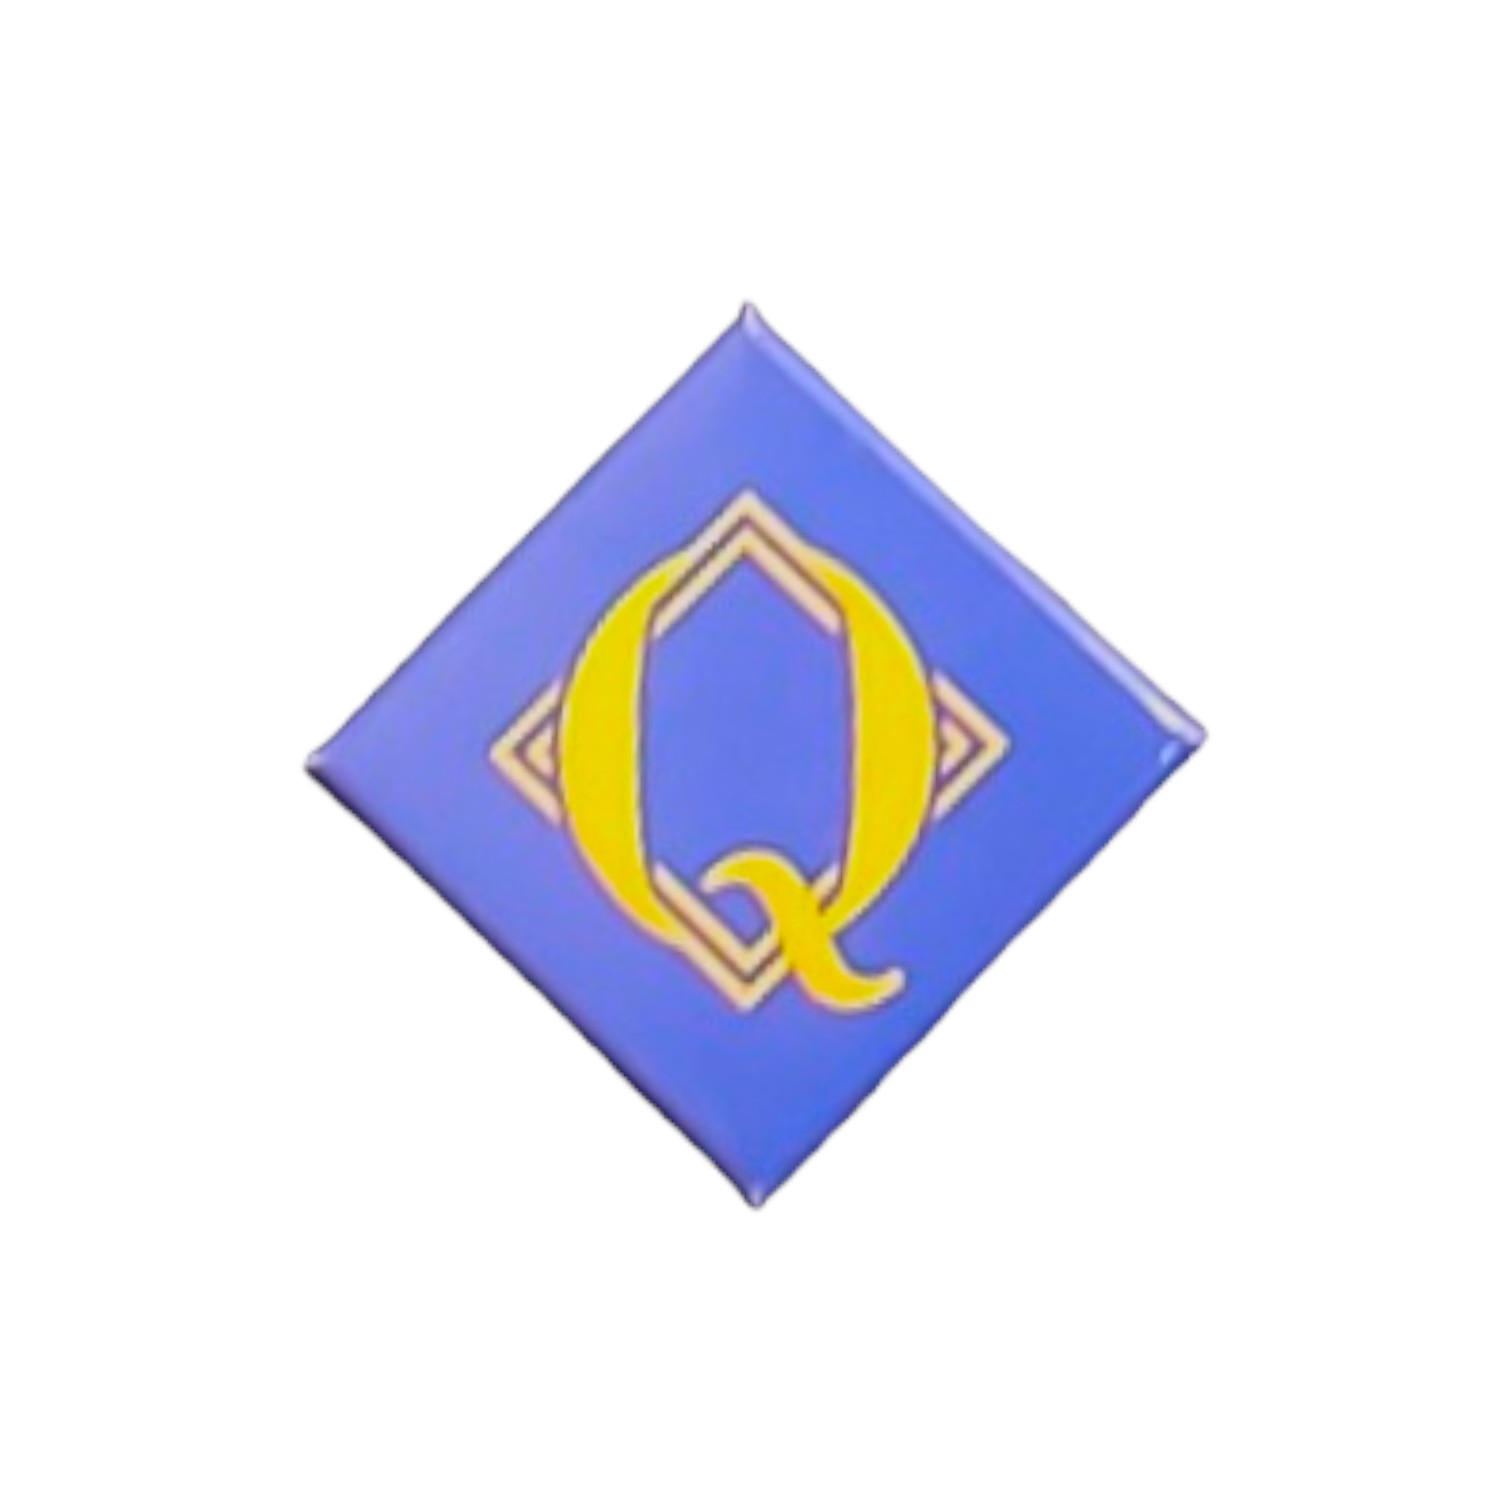 Quadrangle Member Pin